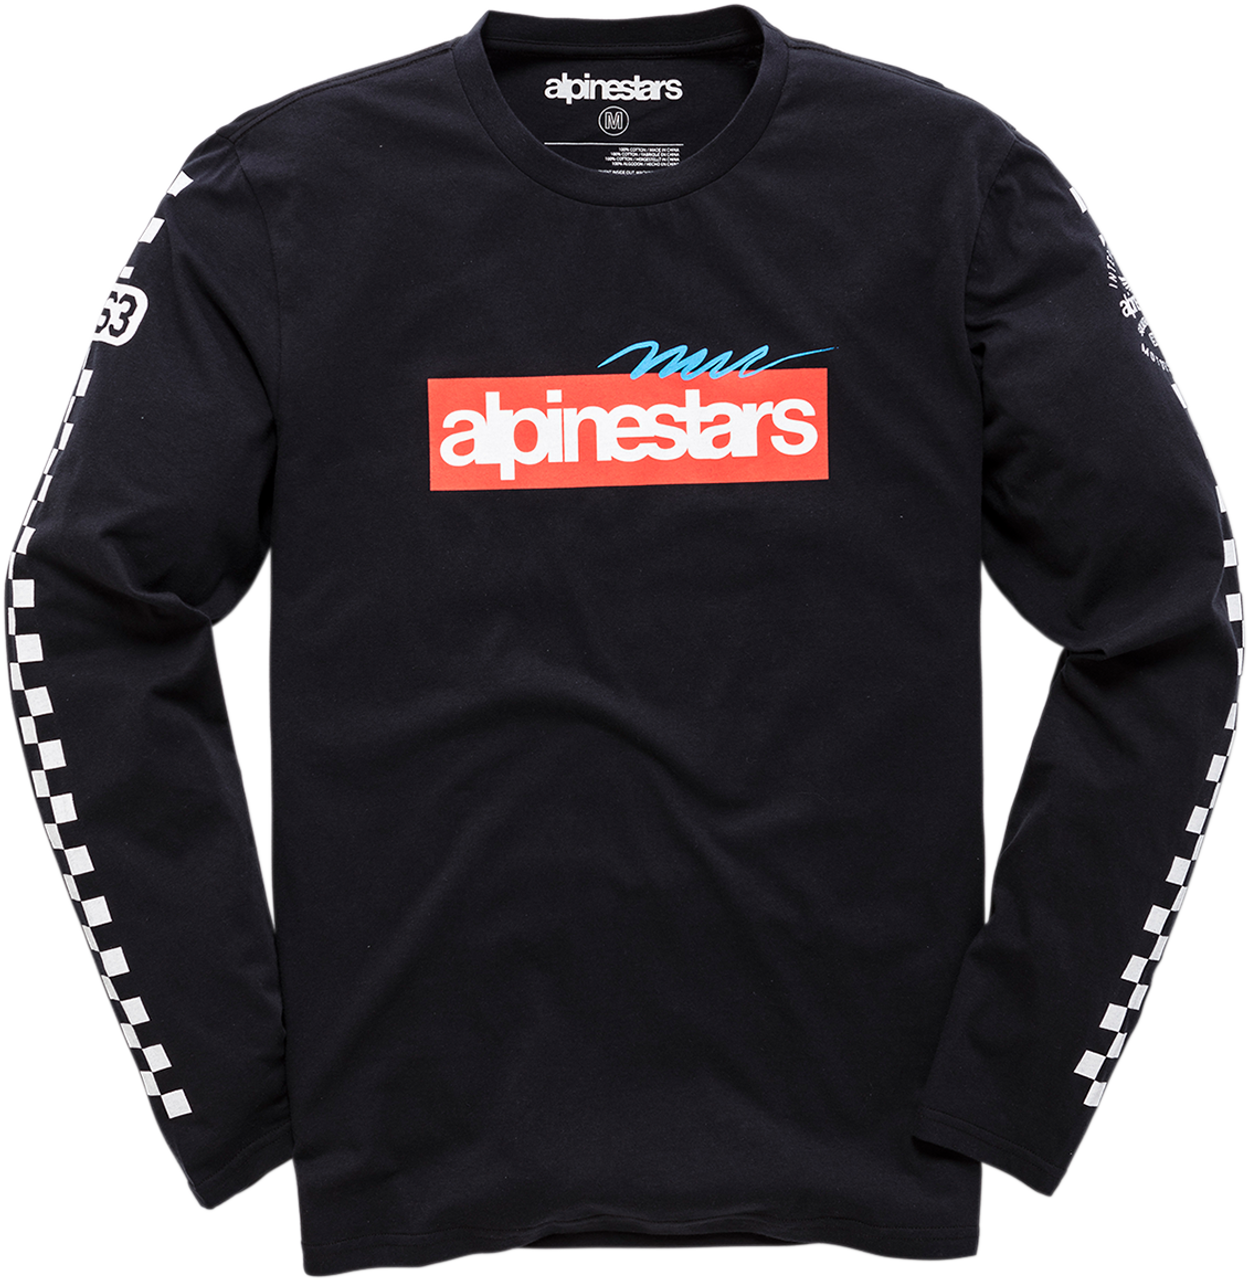 Alpinestars Flyer T-Shirt Black - Get it dirt cheap!